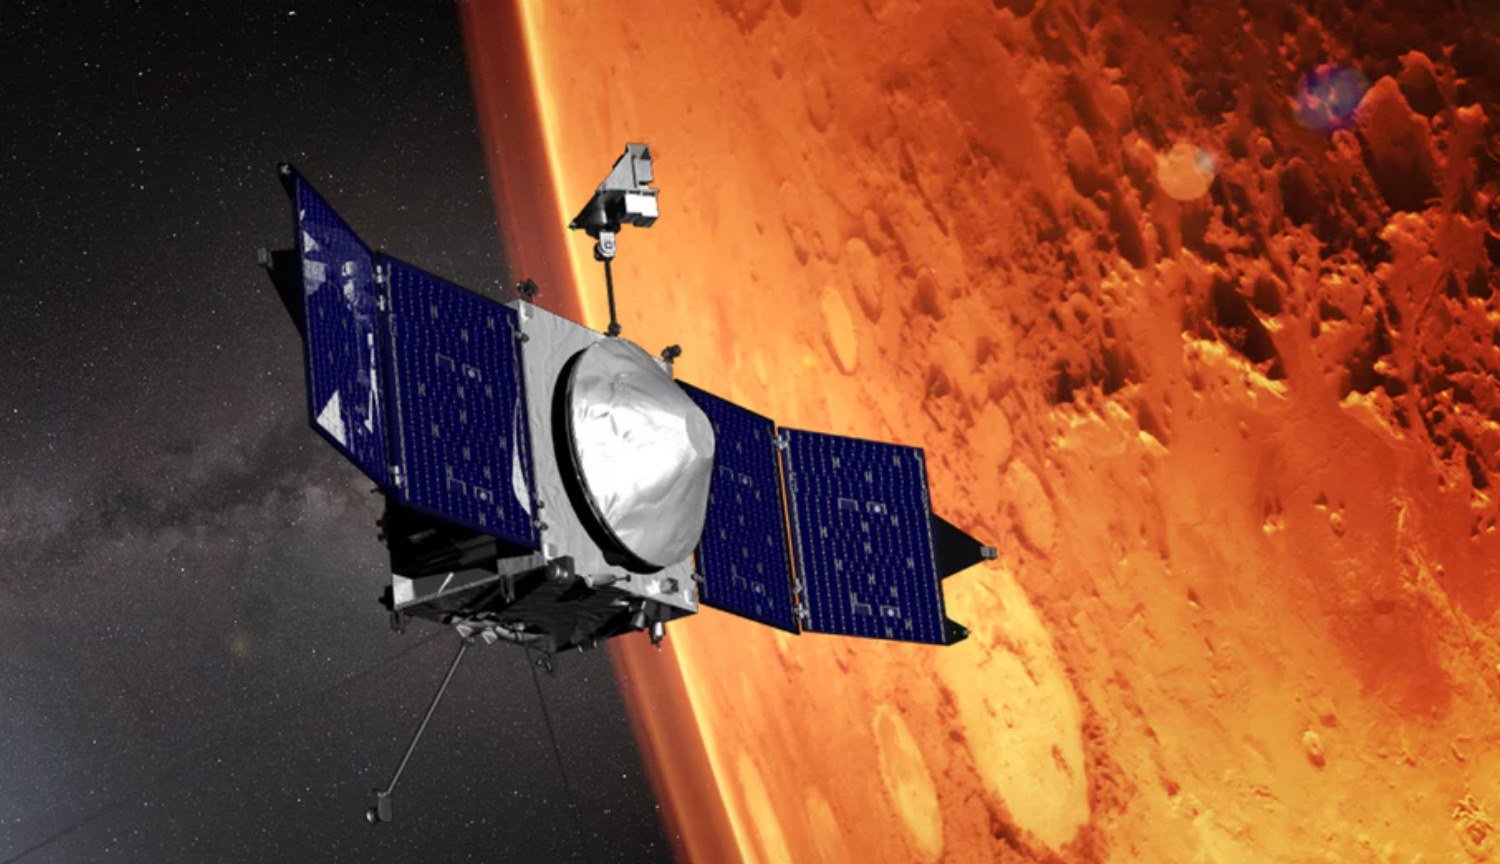 Que vai marciana companheiro MAVEN em 2020?